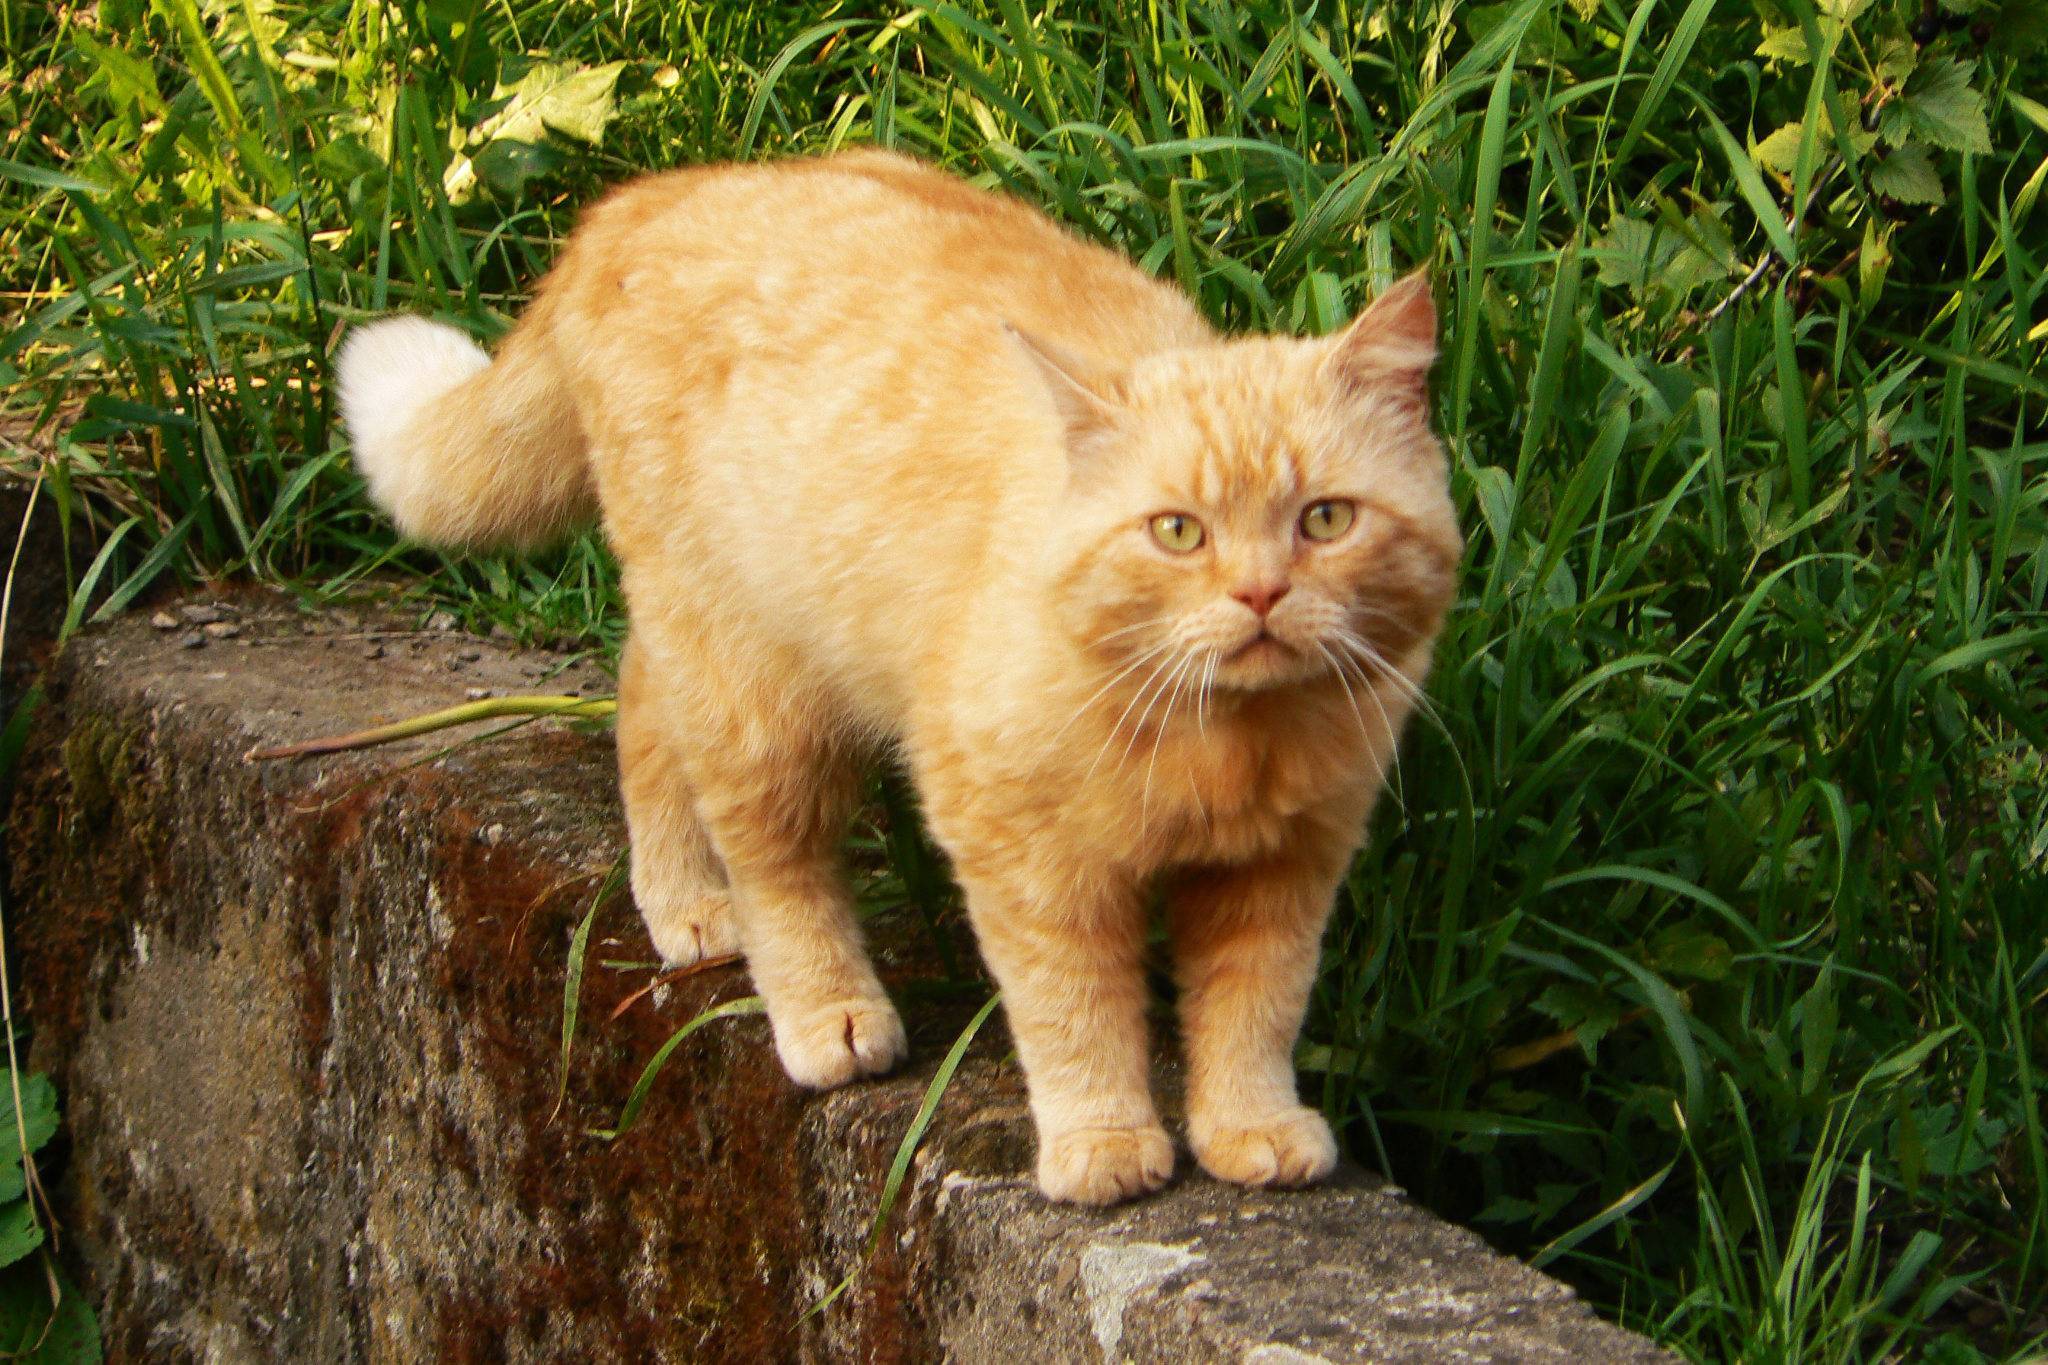 Пушистые кошки: названия пород, их описание и фото